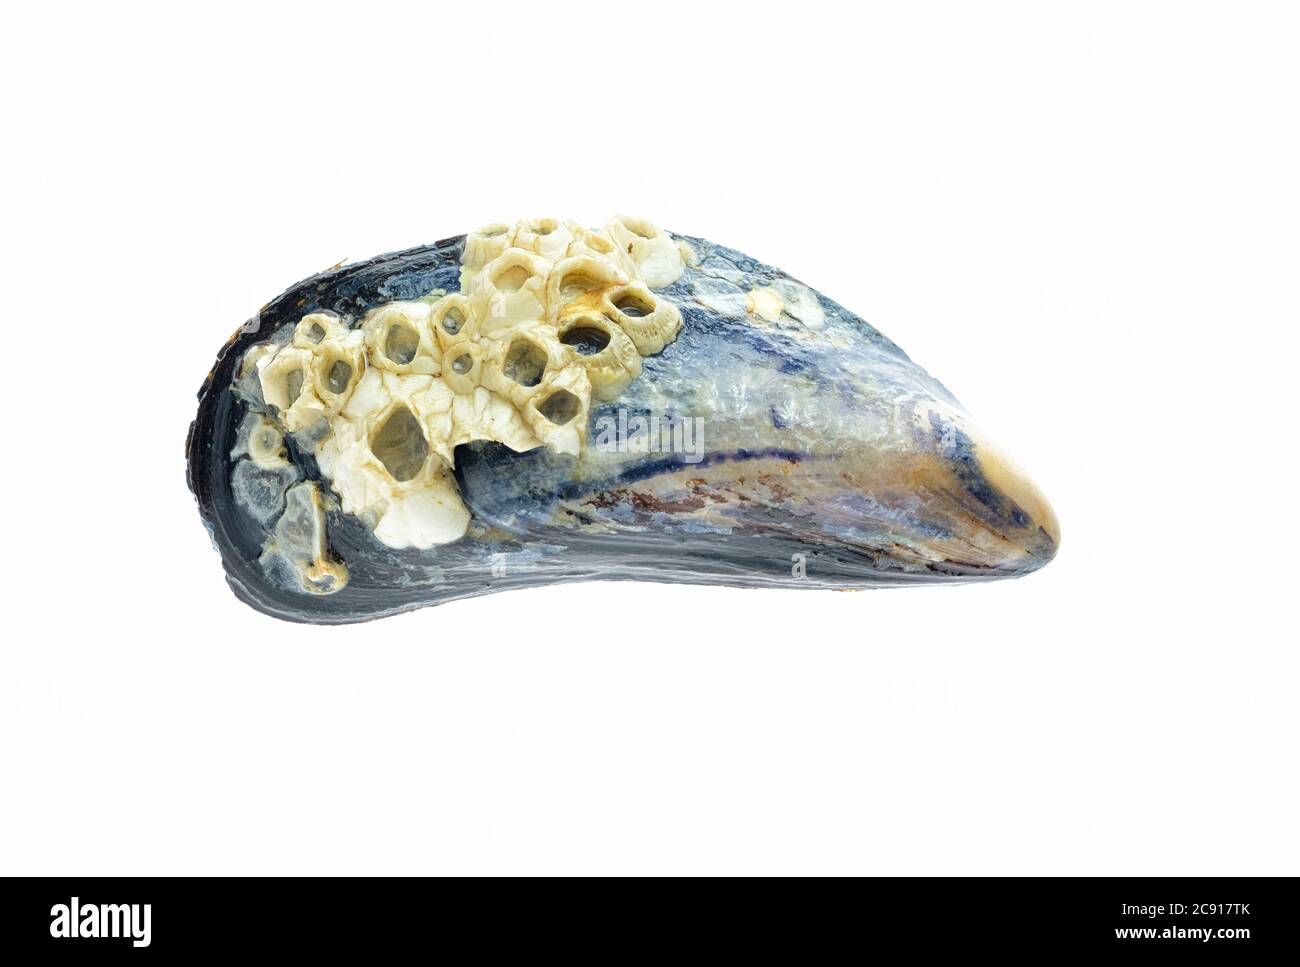 Les coquilles de Semibalanus balanoides, l'espèce boreo-arctique de barnacle d'corne sur une coquille de moule bleue, Mytilus edulis. Arrière-plan blanc Banque D'Images